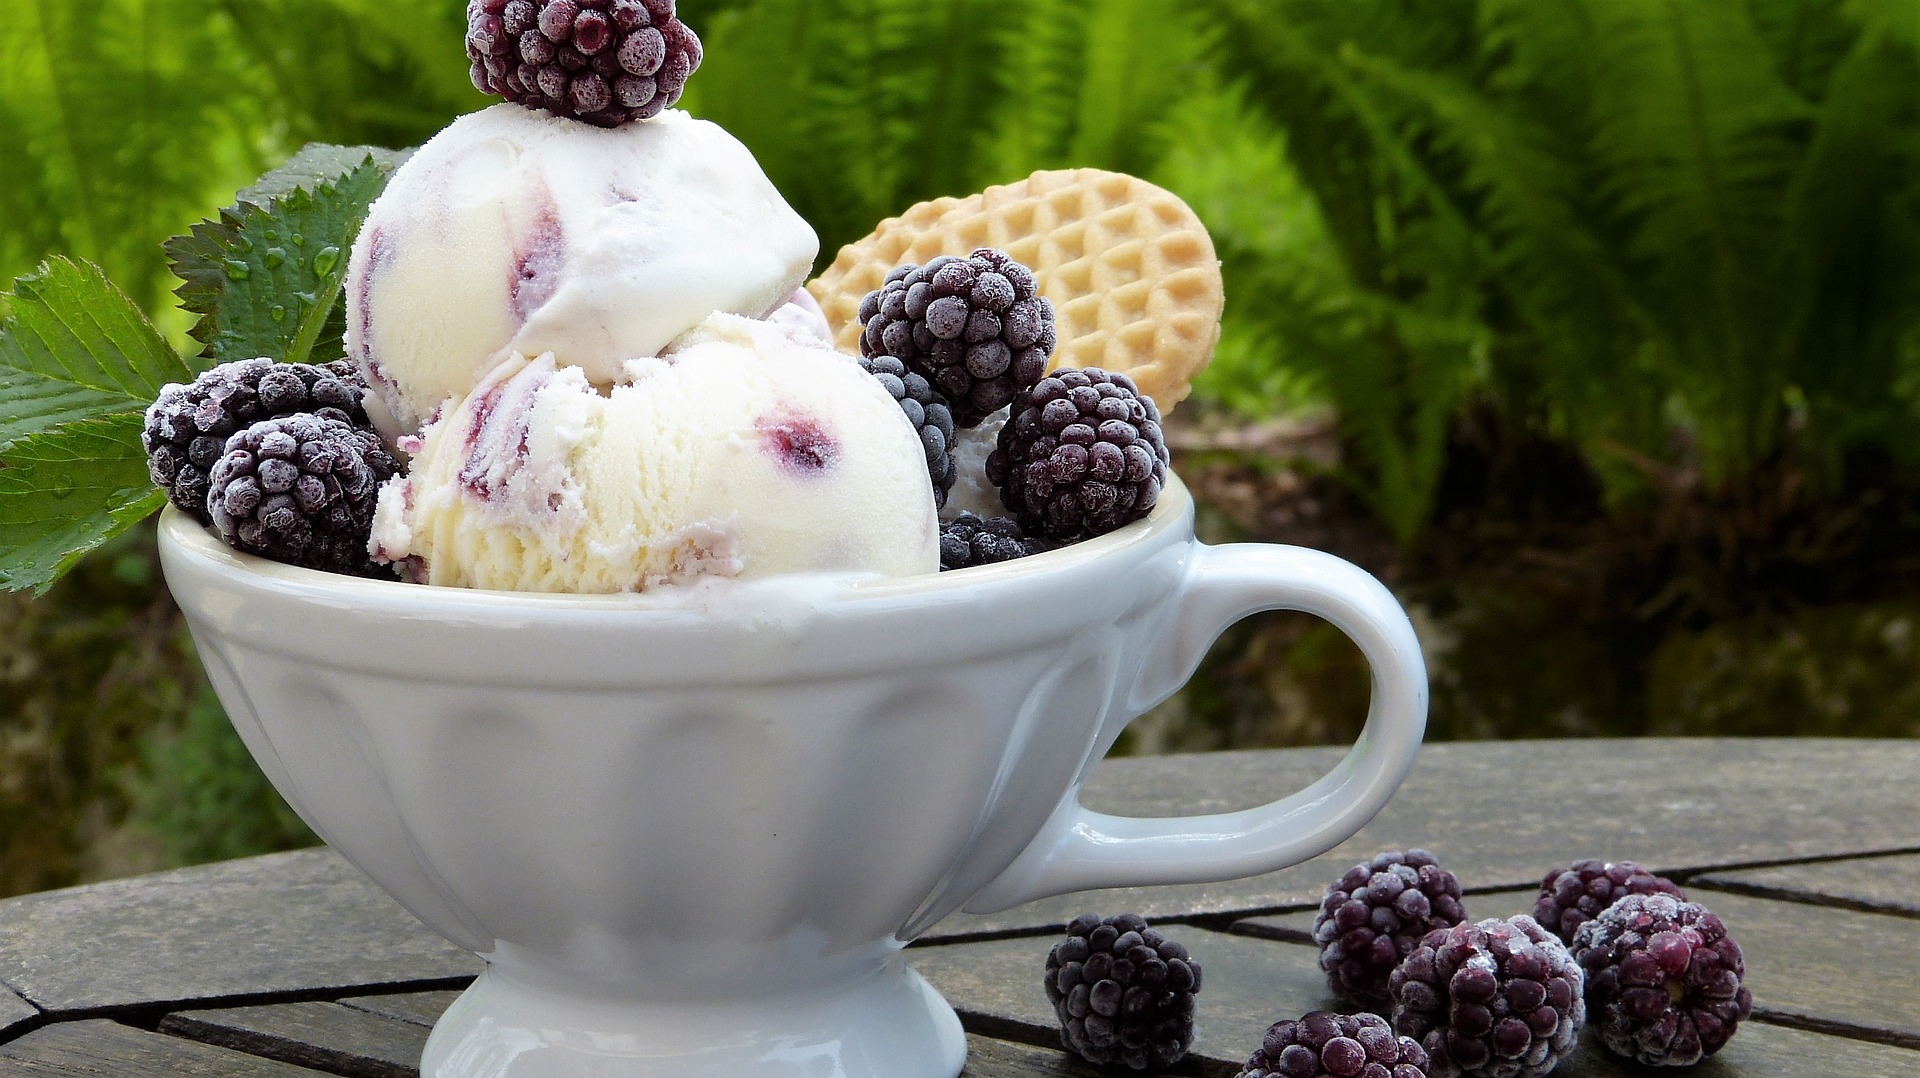 Ice Cream and Blackberries